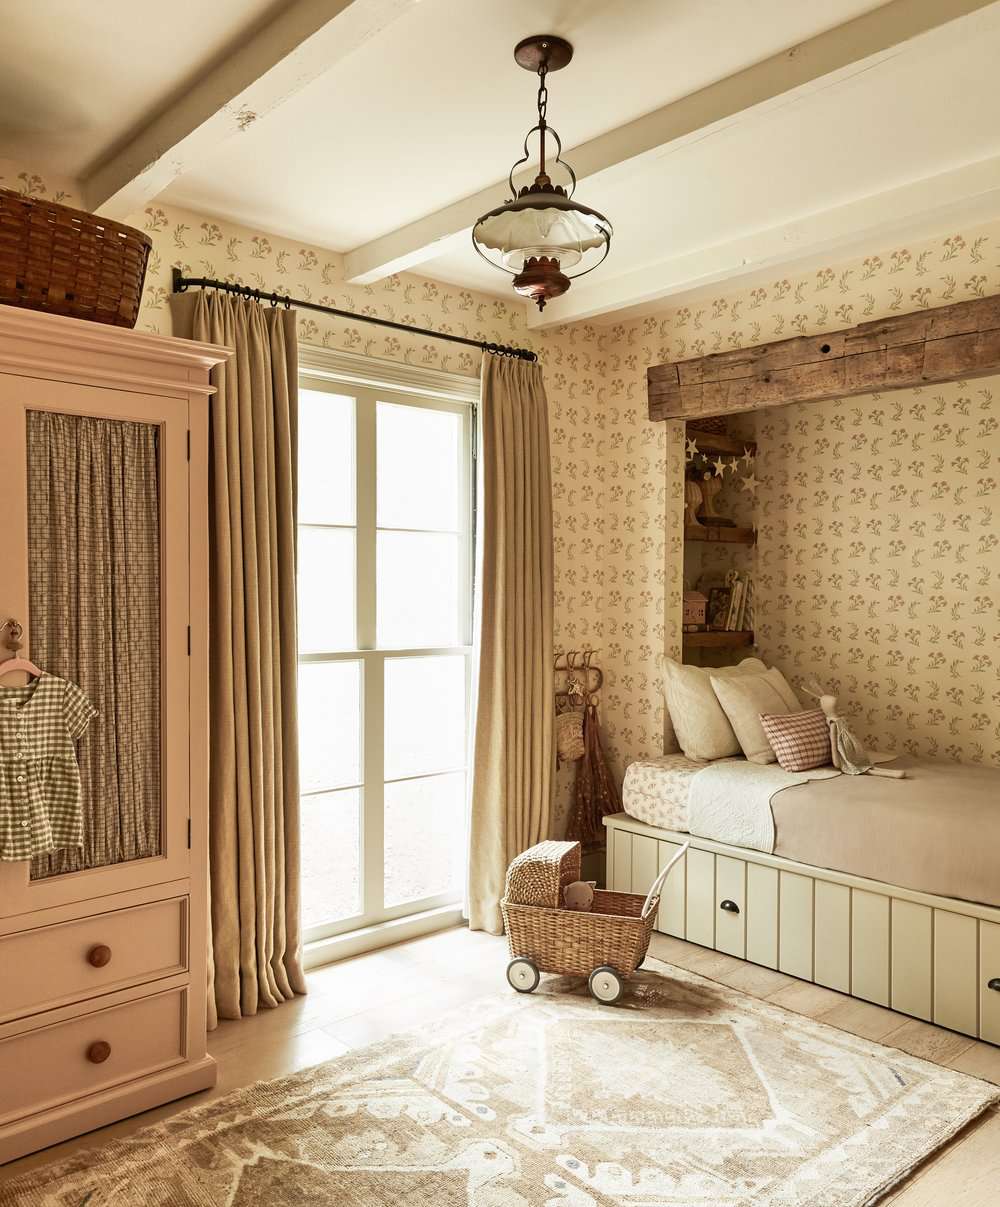 Dormitorio infantil estilo cabaña con cama empotrada con cajón de almacenaje cubierto de shiplap